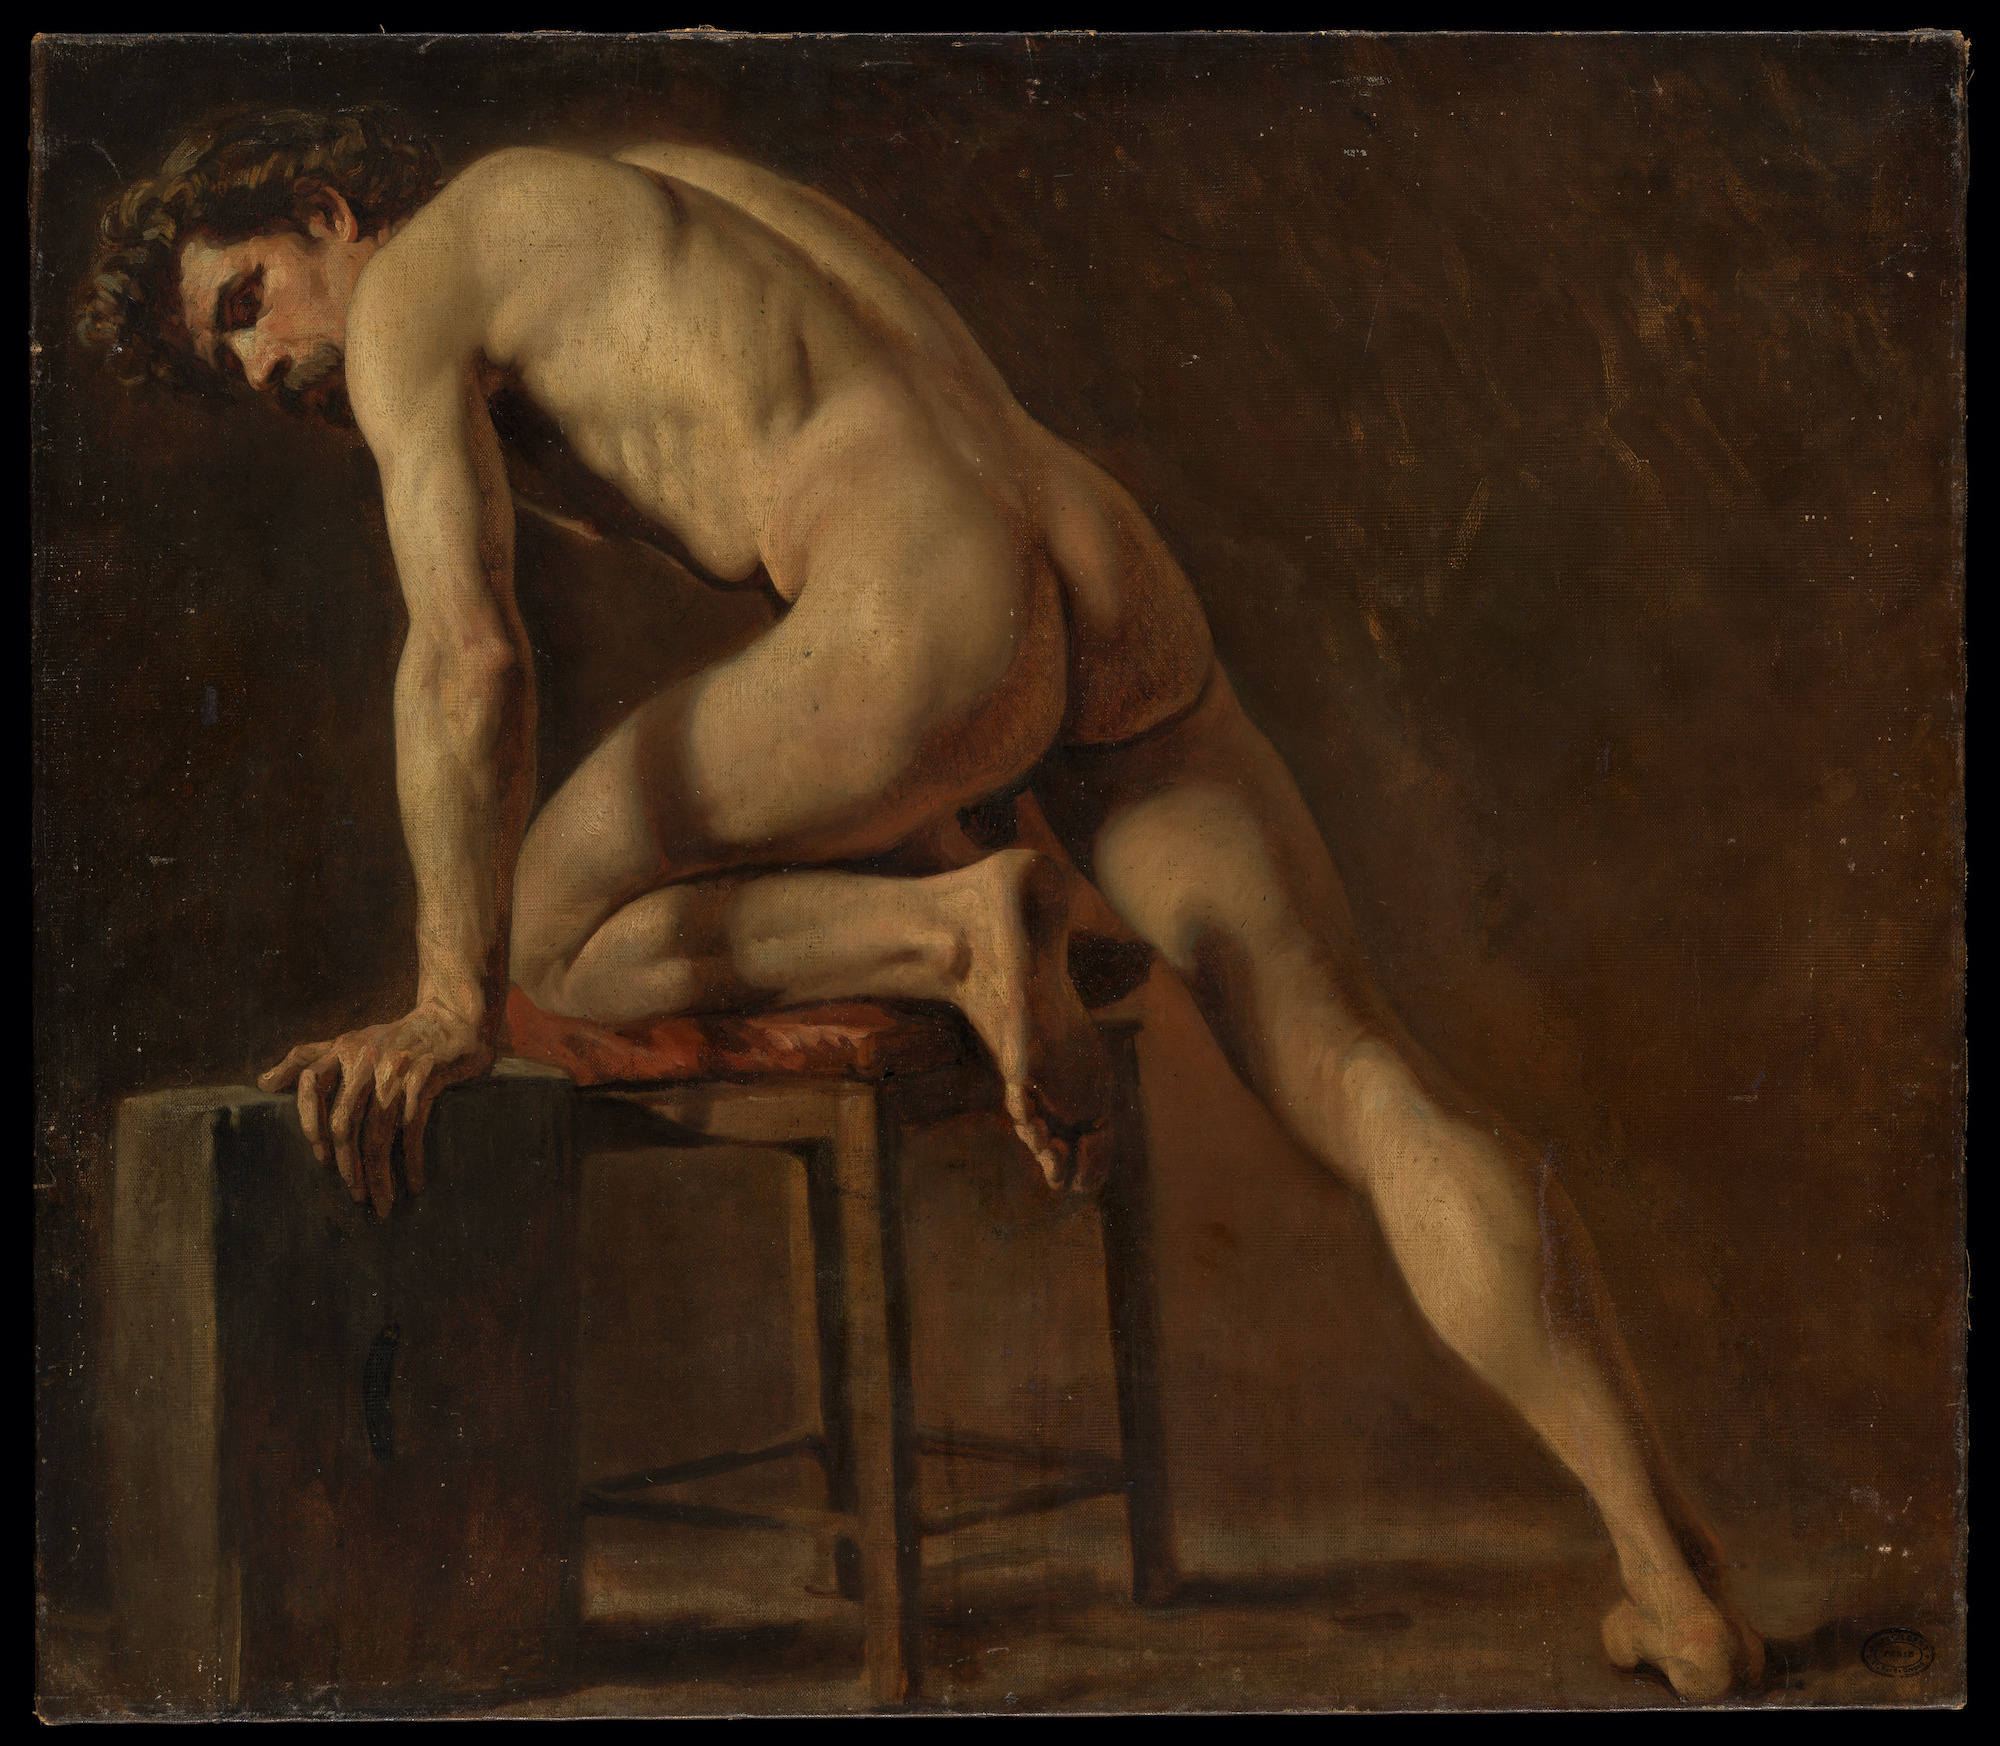 Étude d'un homme nu by Gustave Courbet - Début des années 1840 - 73.7 × 84.1 cm Metropolitan Museum of Art